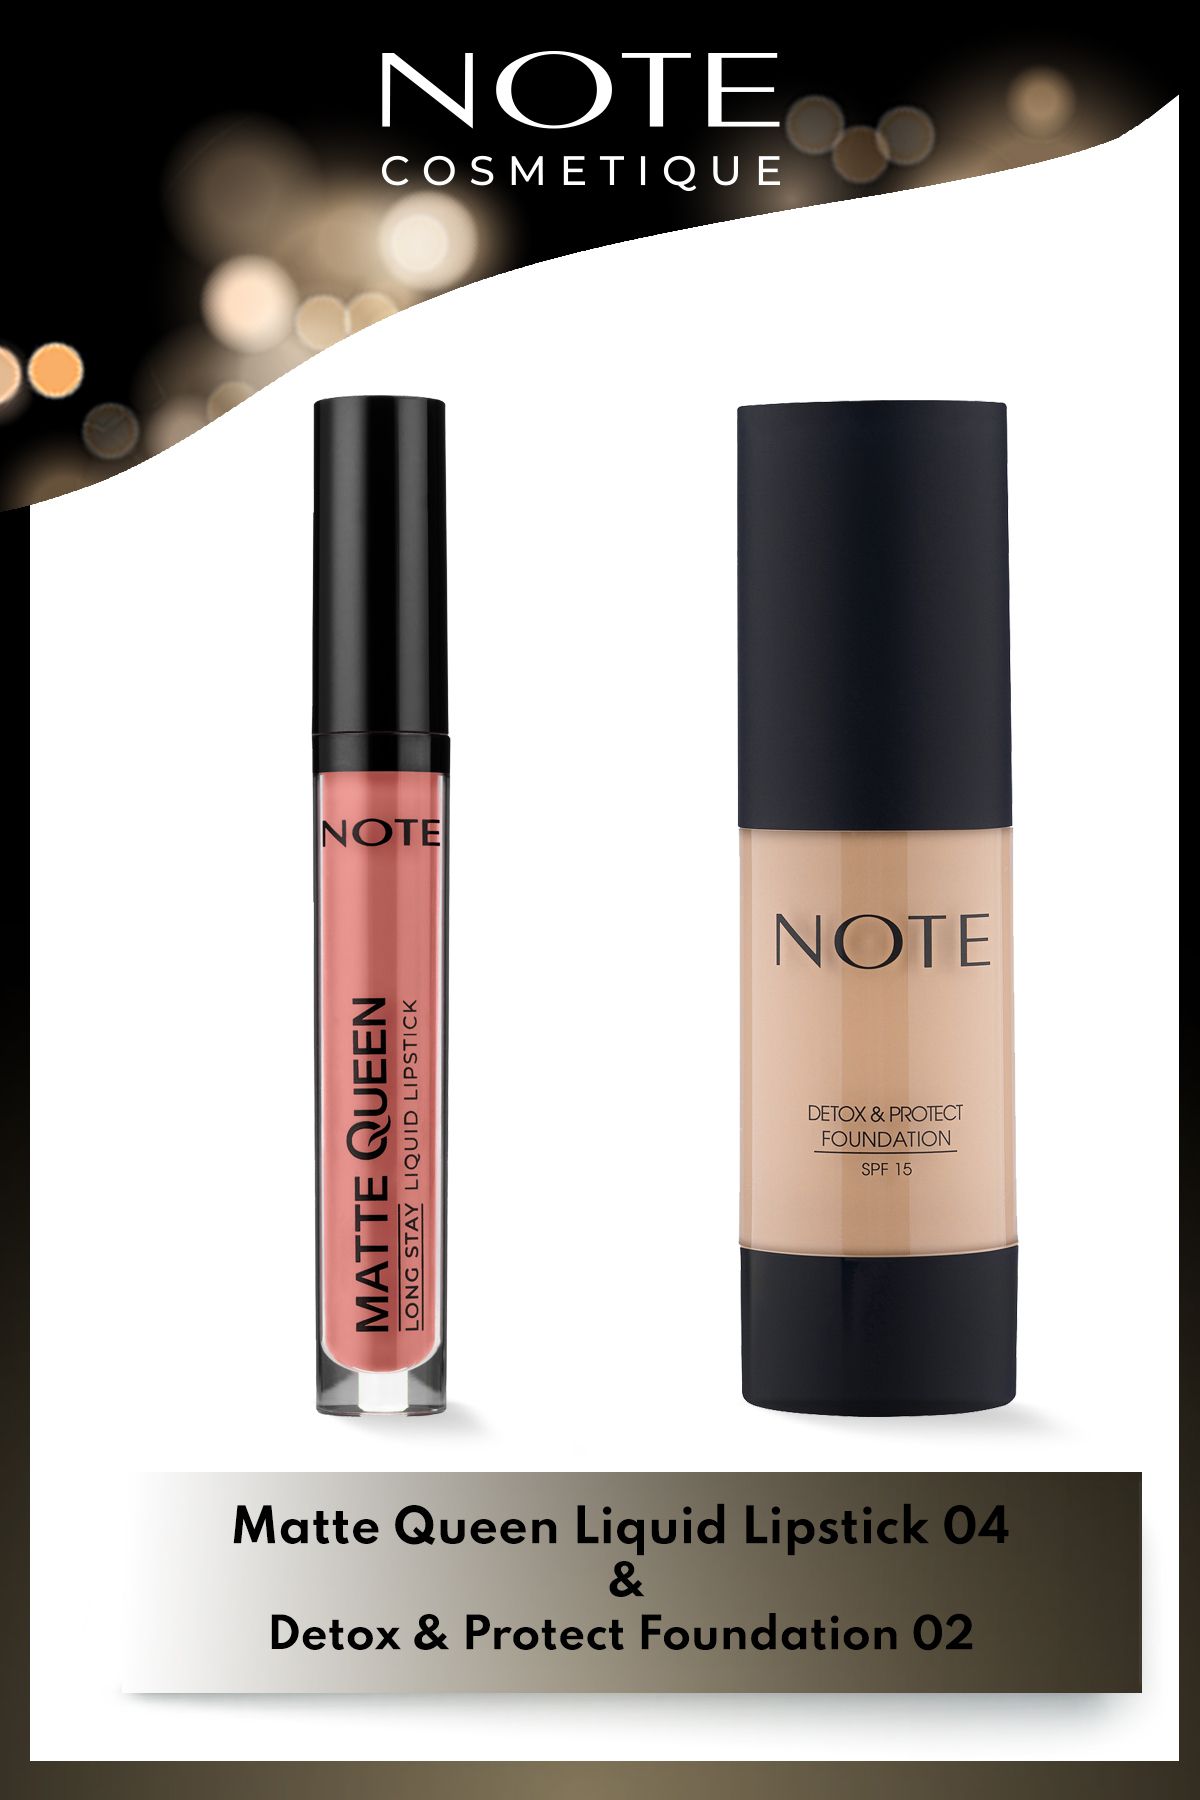 Note Cosmetics Matte Queen Lipstick Ruj 04 - Nude & Detox & Protect Spf 15 Fondöten 02 Natural Beige Makyaj Seti